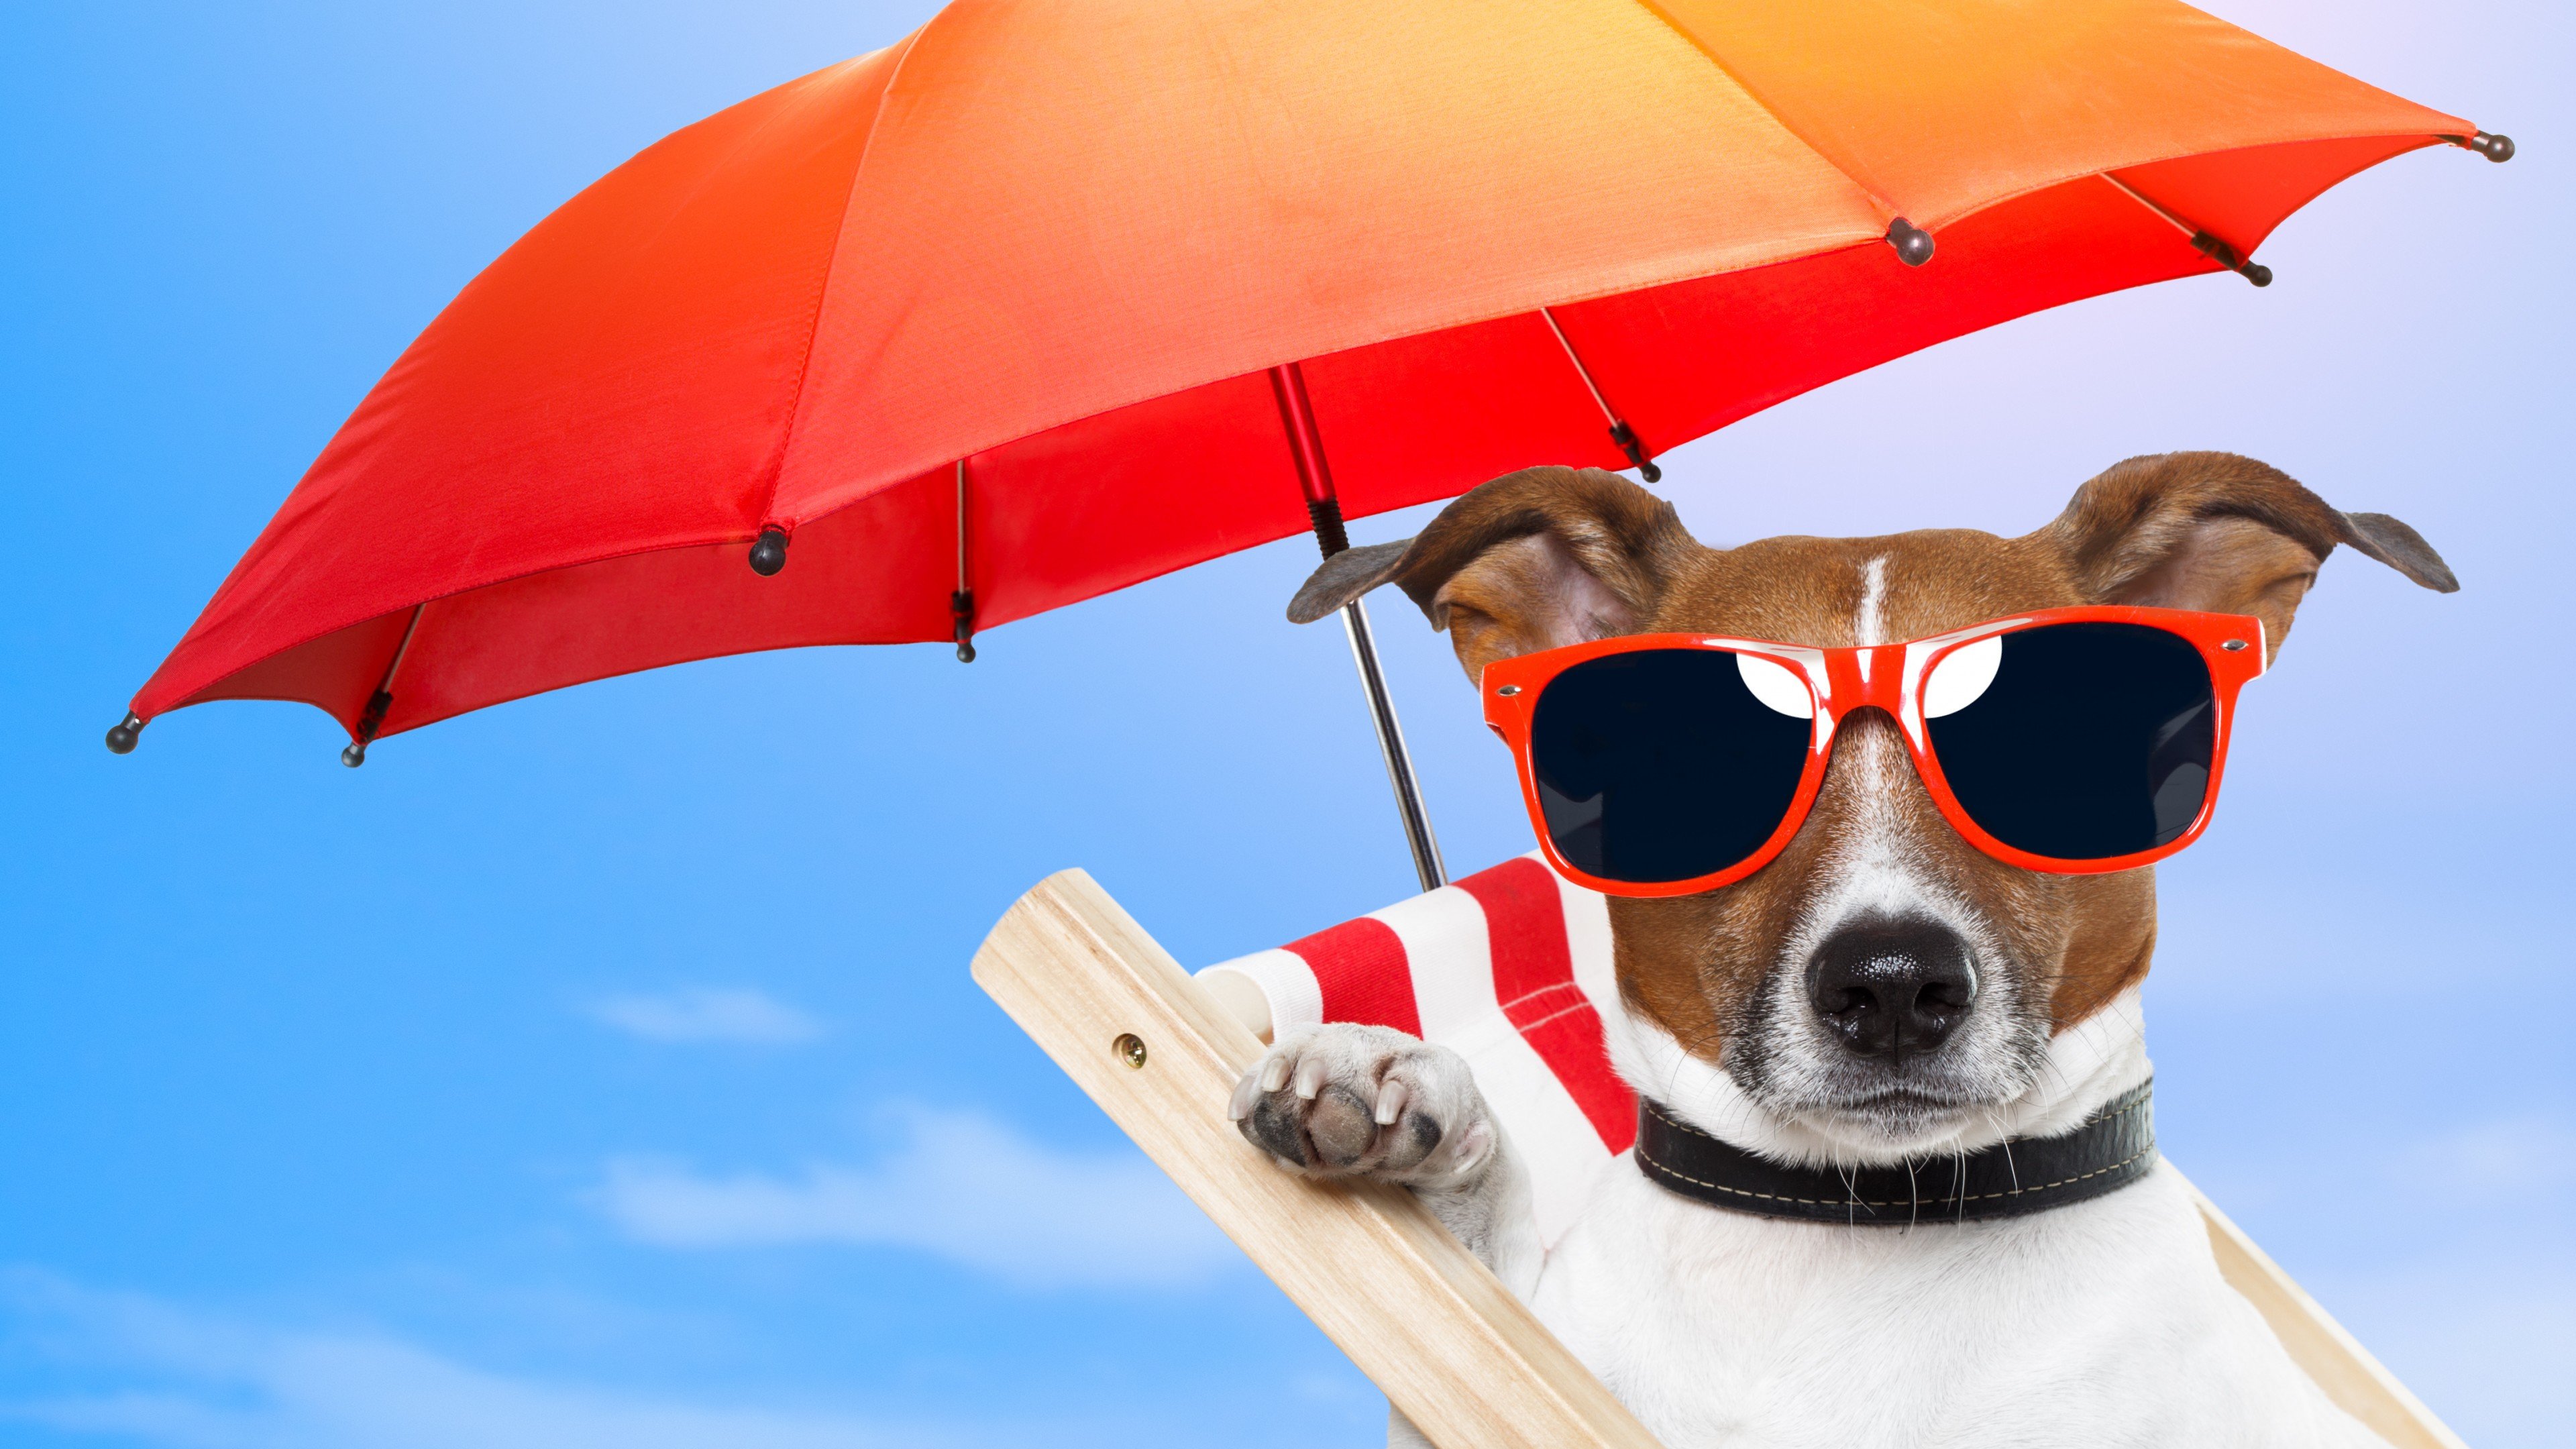 Wallpaper Dog, 5k, 4k wallpaper, 8k, puppy, sun, summer, beach, sunglasses, umbrella, vacation, animal, pet, sky, Animals